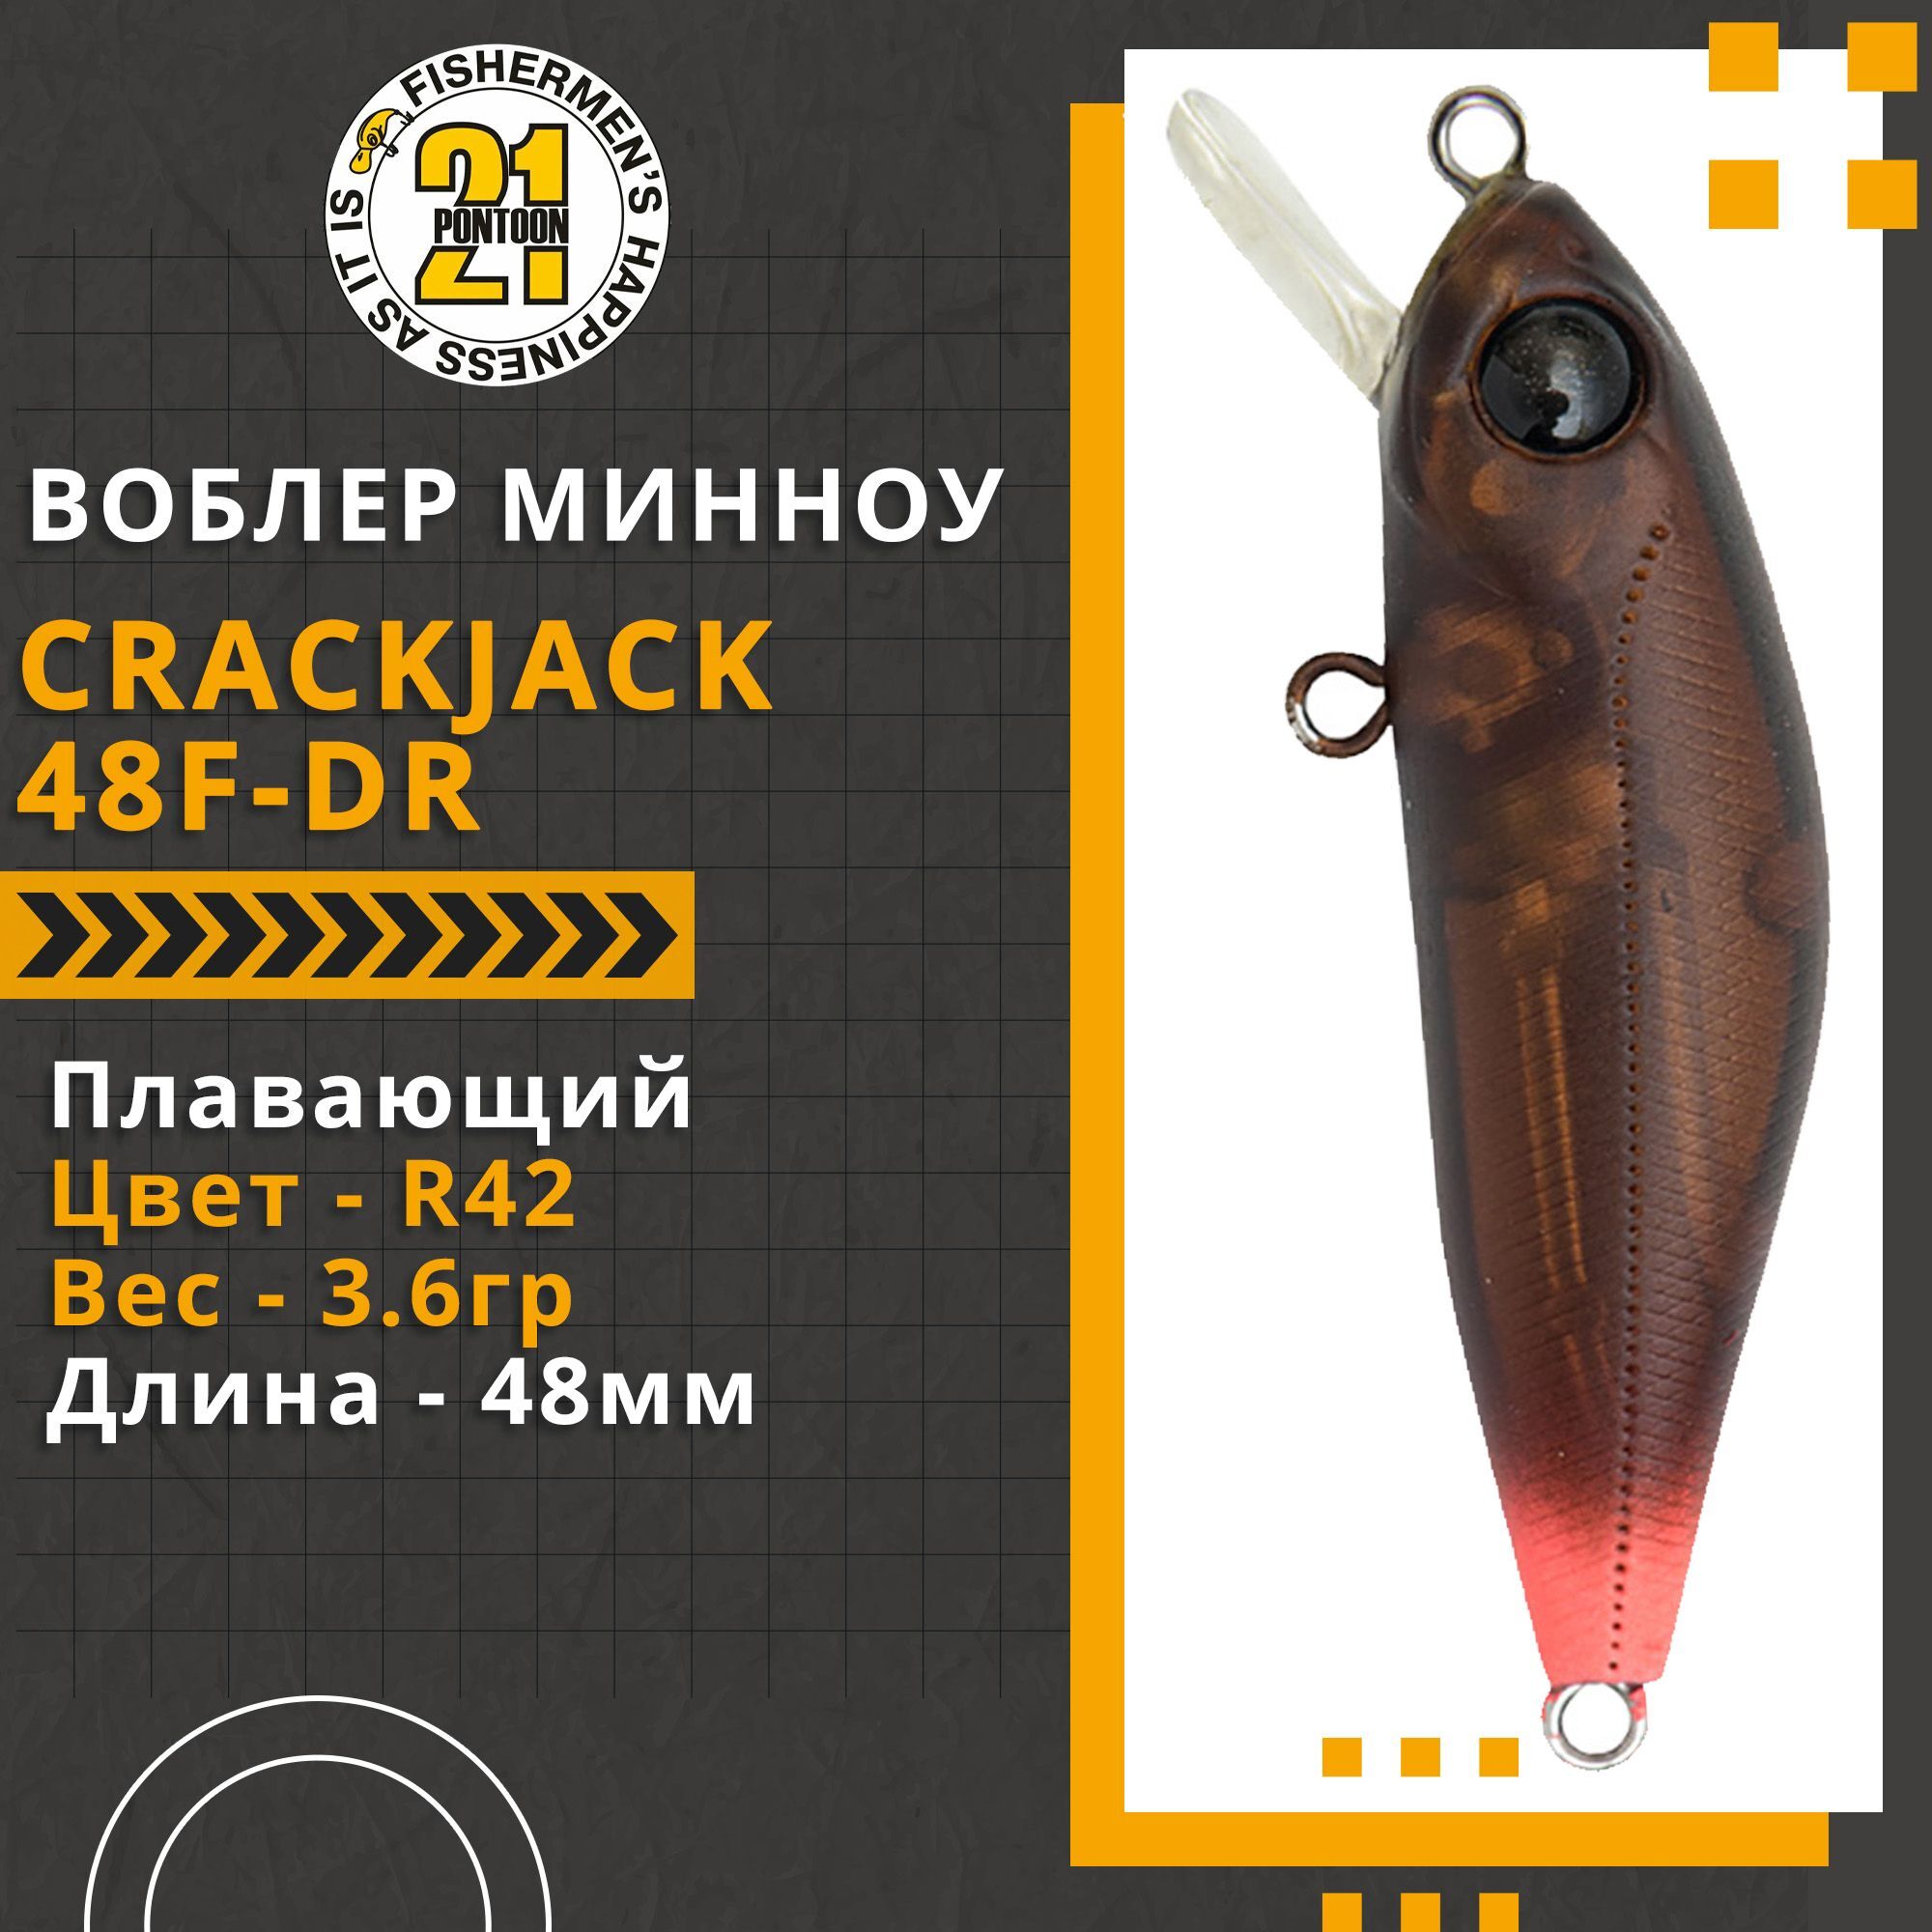 Воблер для рыбалки Pontoon21 Crackjack 48F-DR, 48мм., 3.6гр., заглубление 1.8-2.0 м., цвет